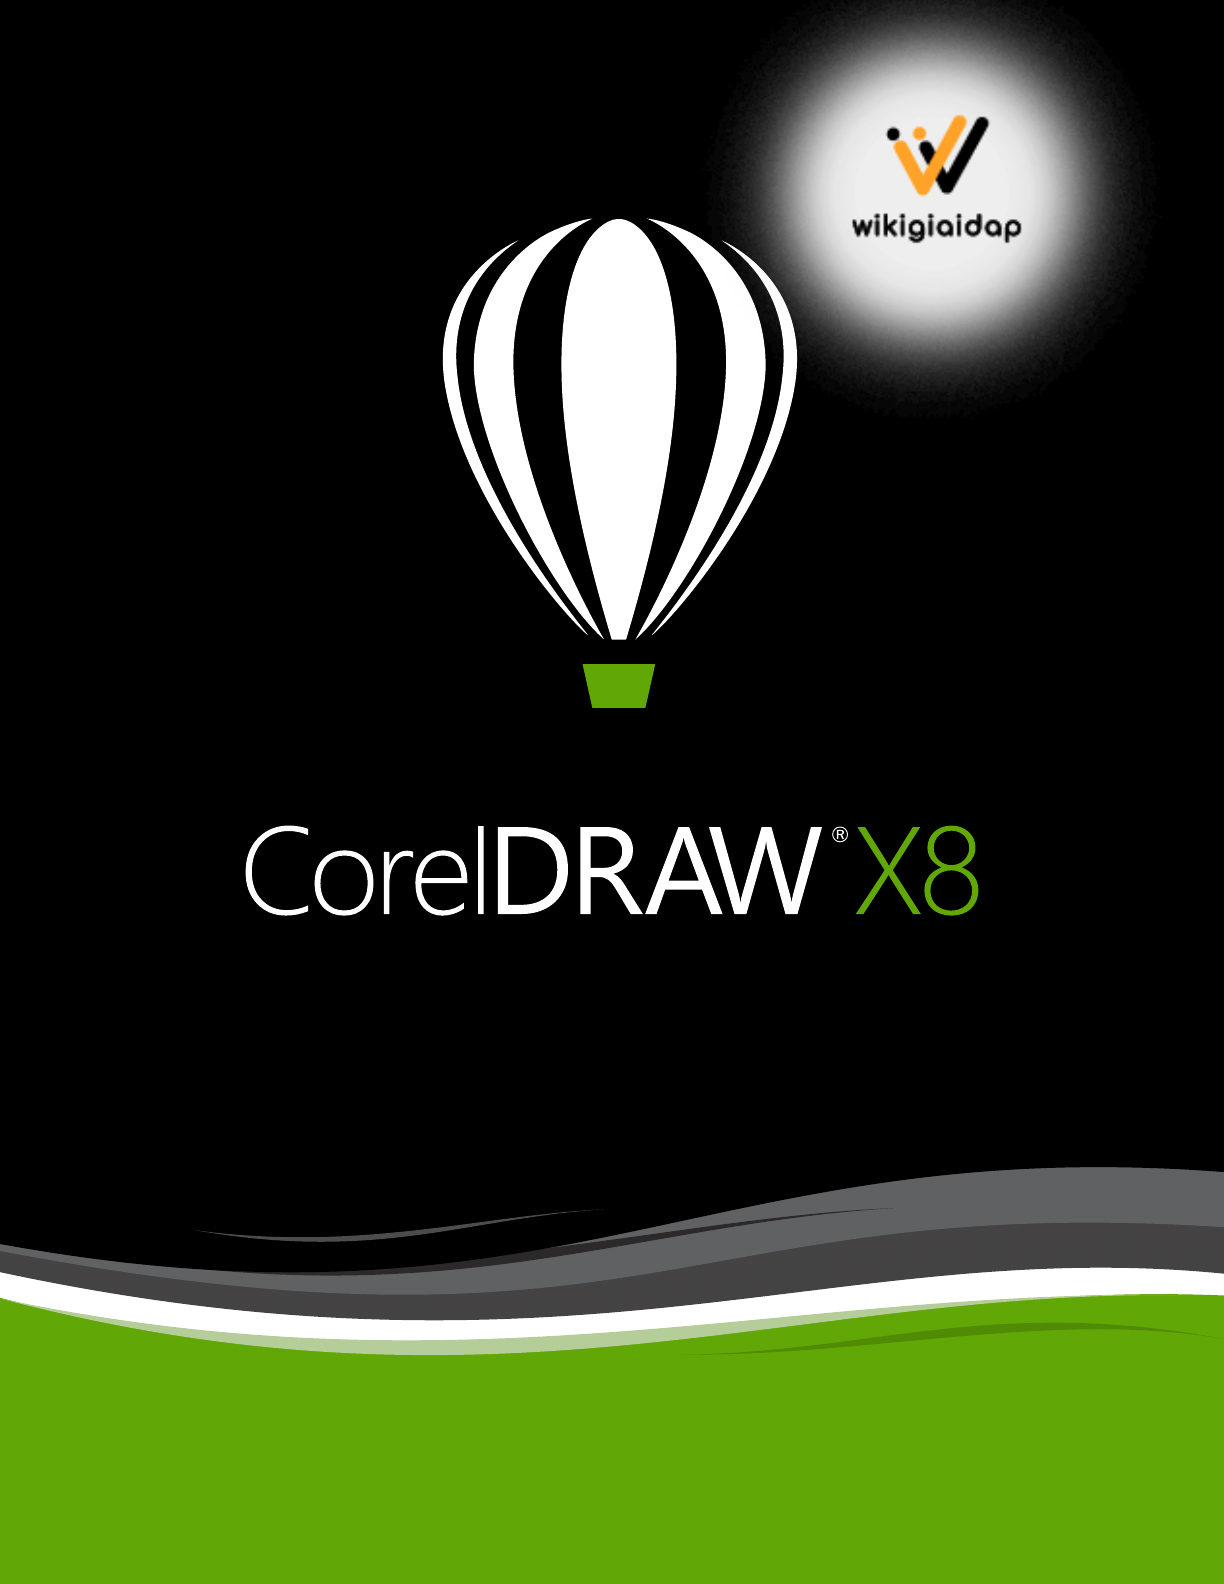 Giới thiệu về CorelDraw X8